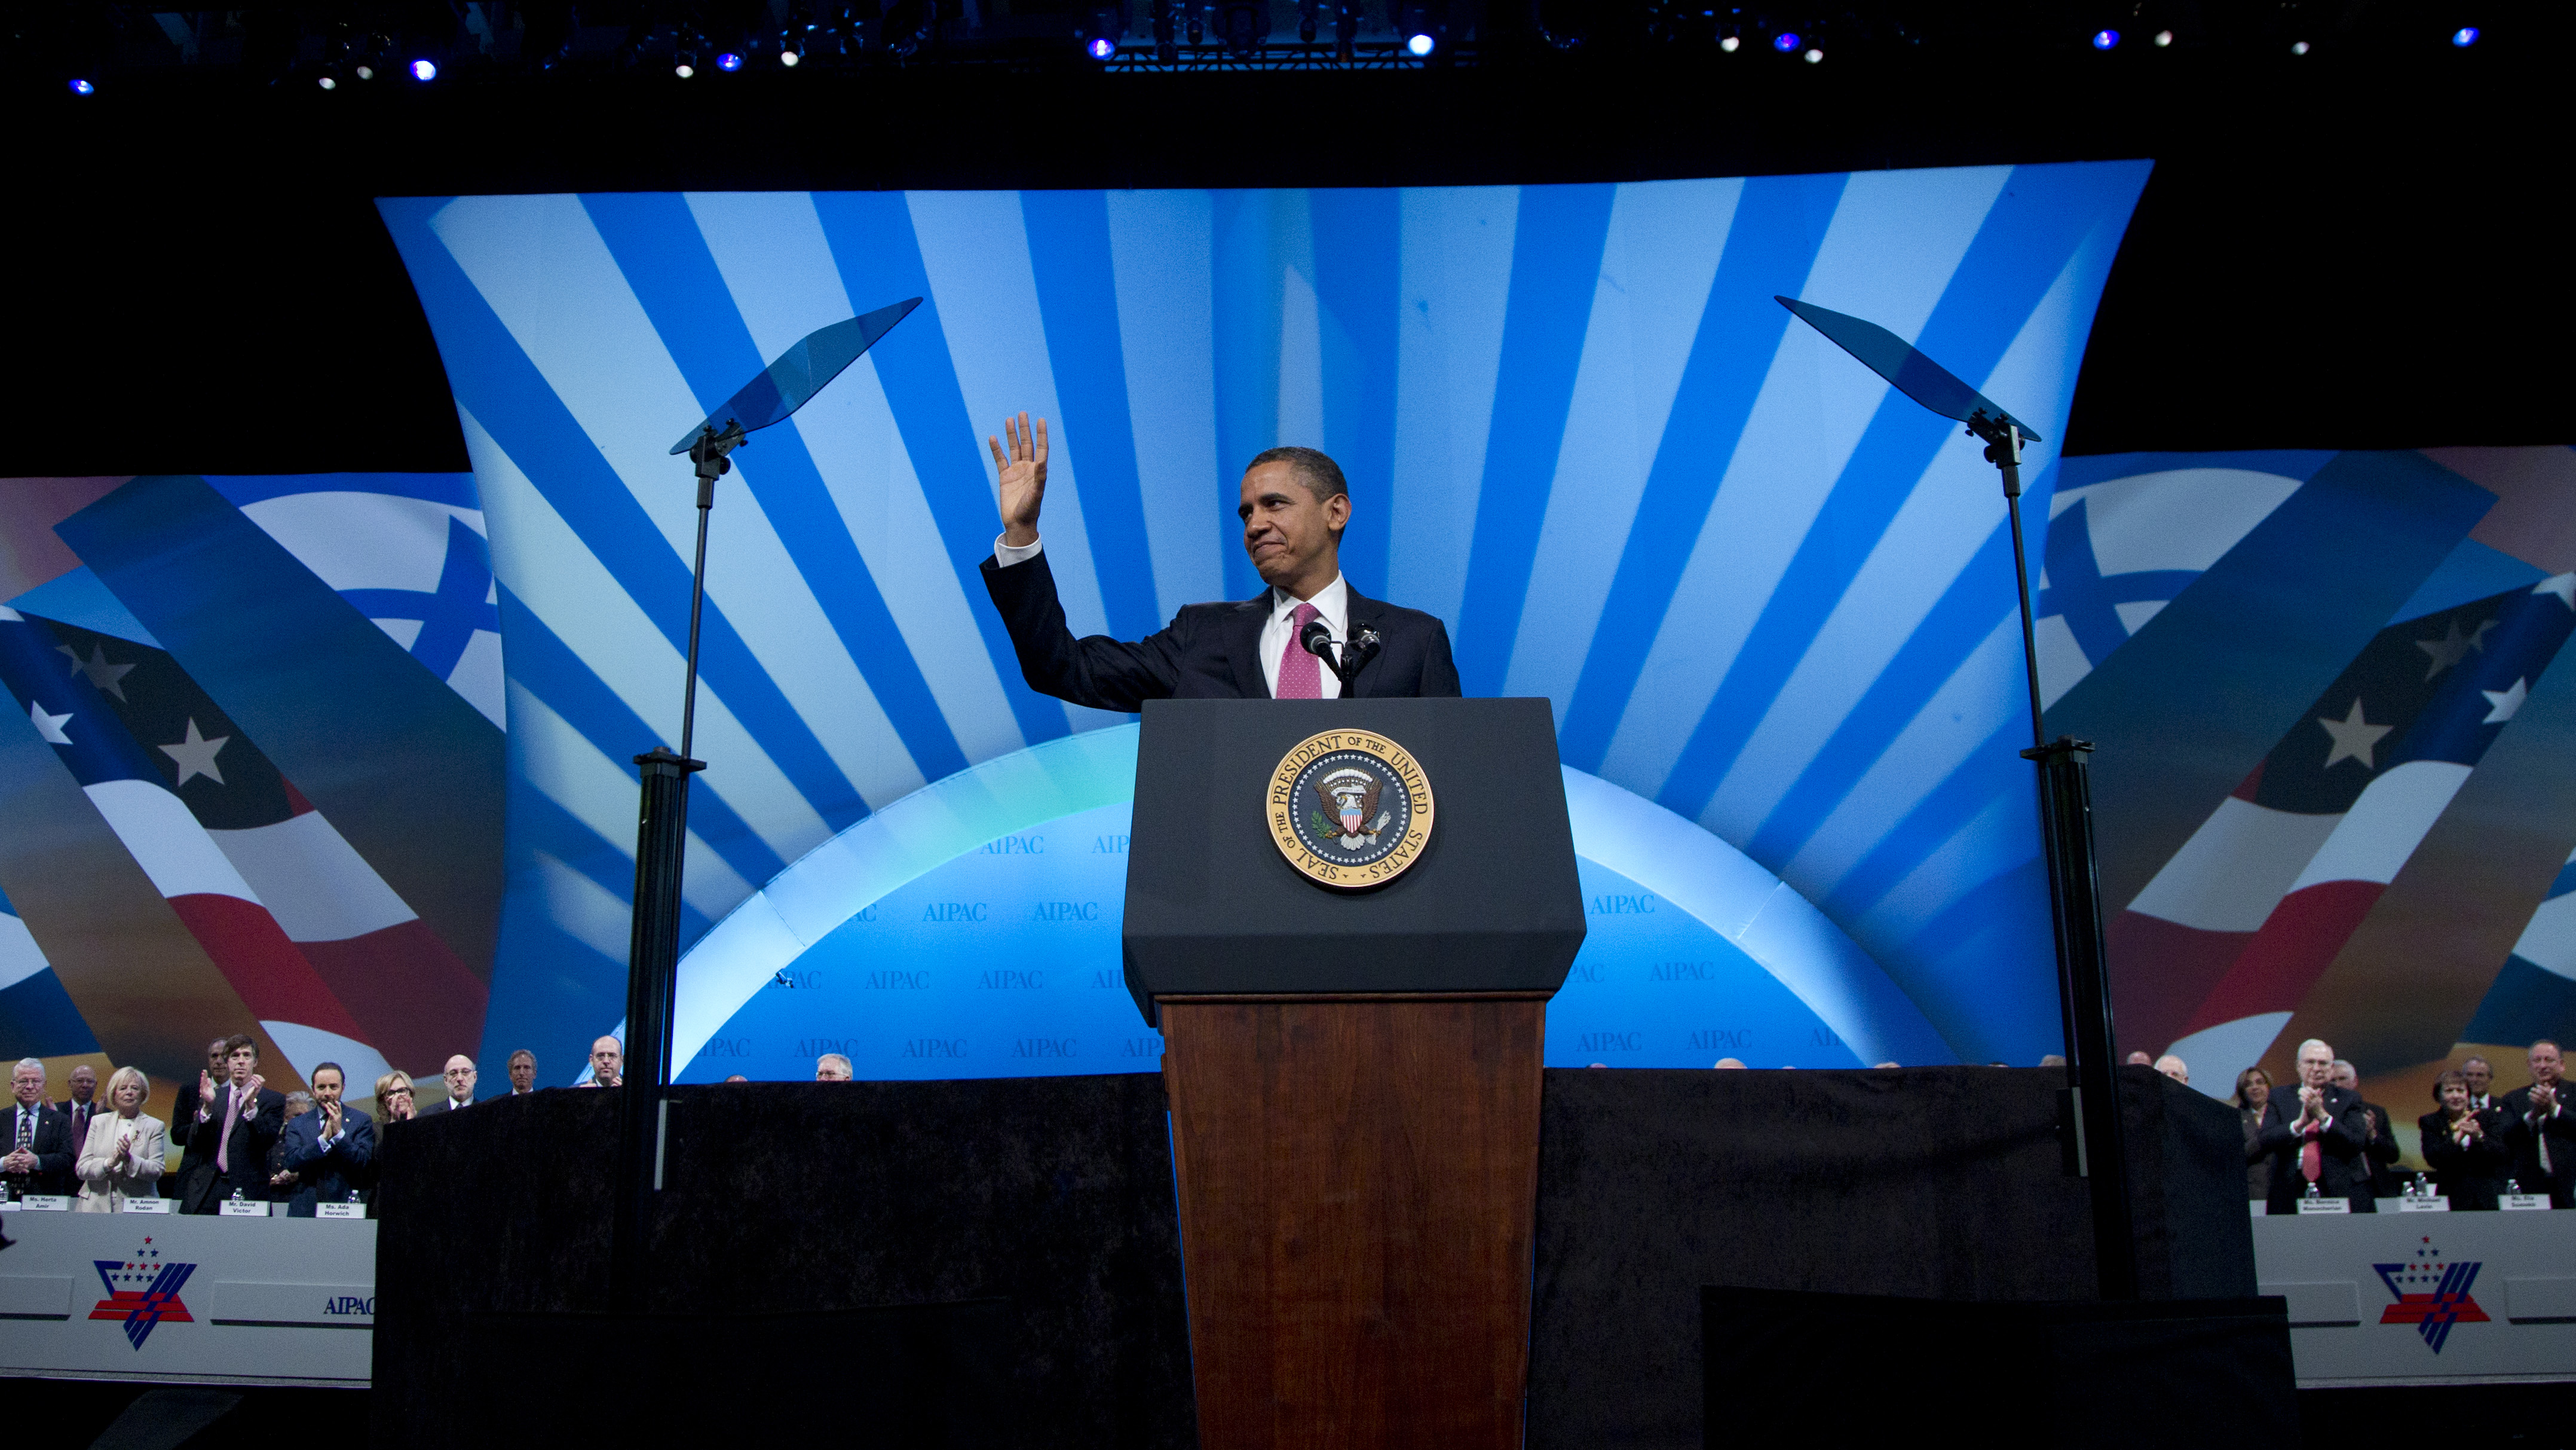 I sitt tal till den pro-israeliska lobbyns årsmöte sa Obama att han alltid gett sitt fulla stöd till Israel.